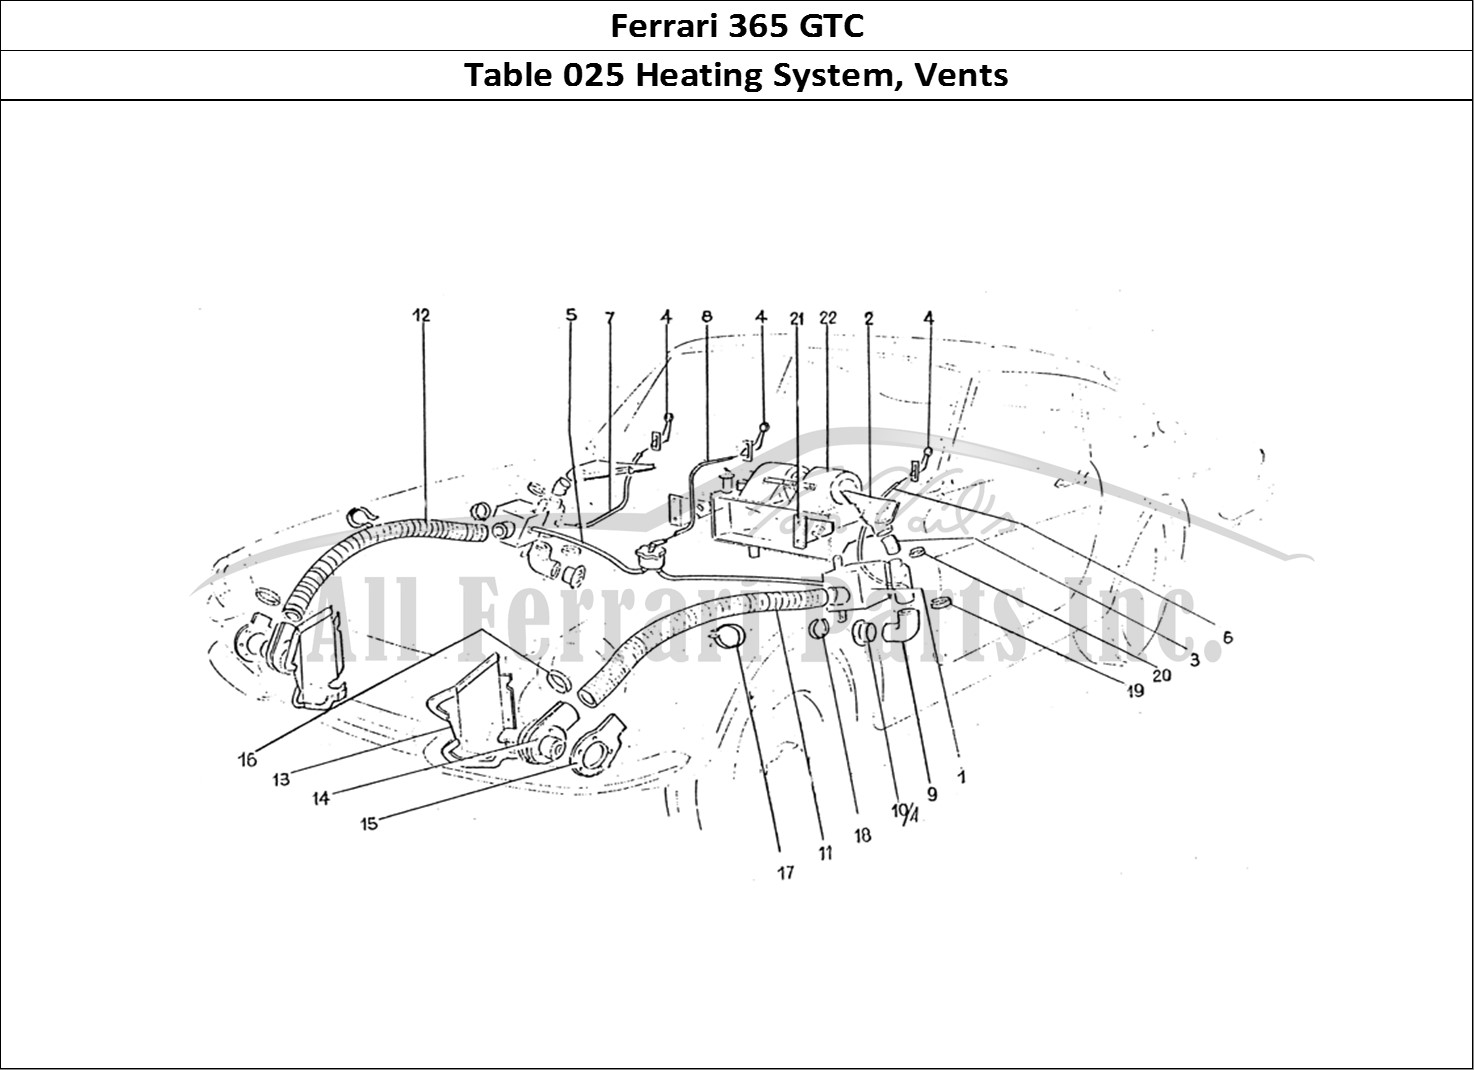 Ferrari Parts Ferrari 330 GTC (Coachwork) Page 025 Heating matrix & vents